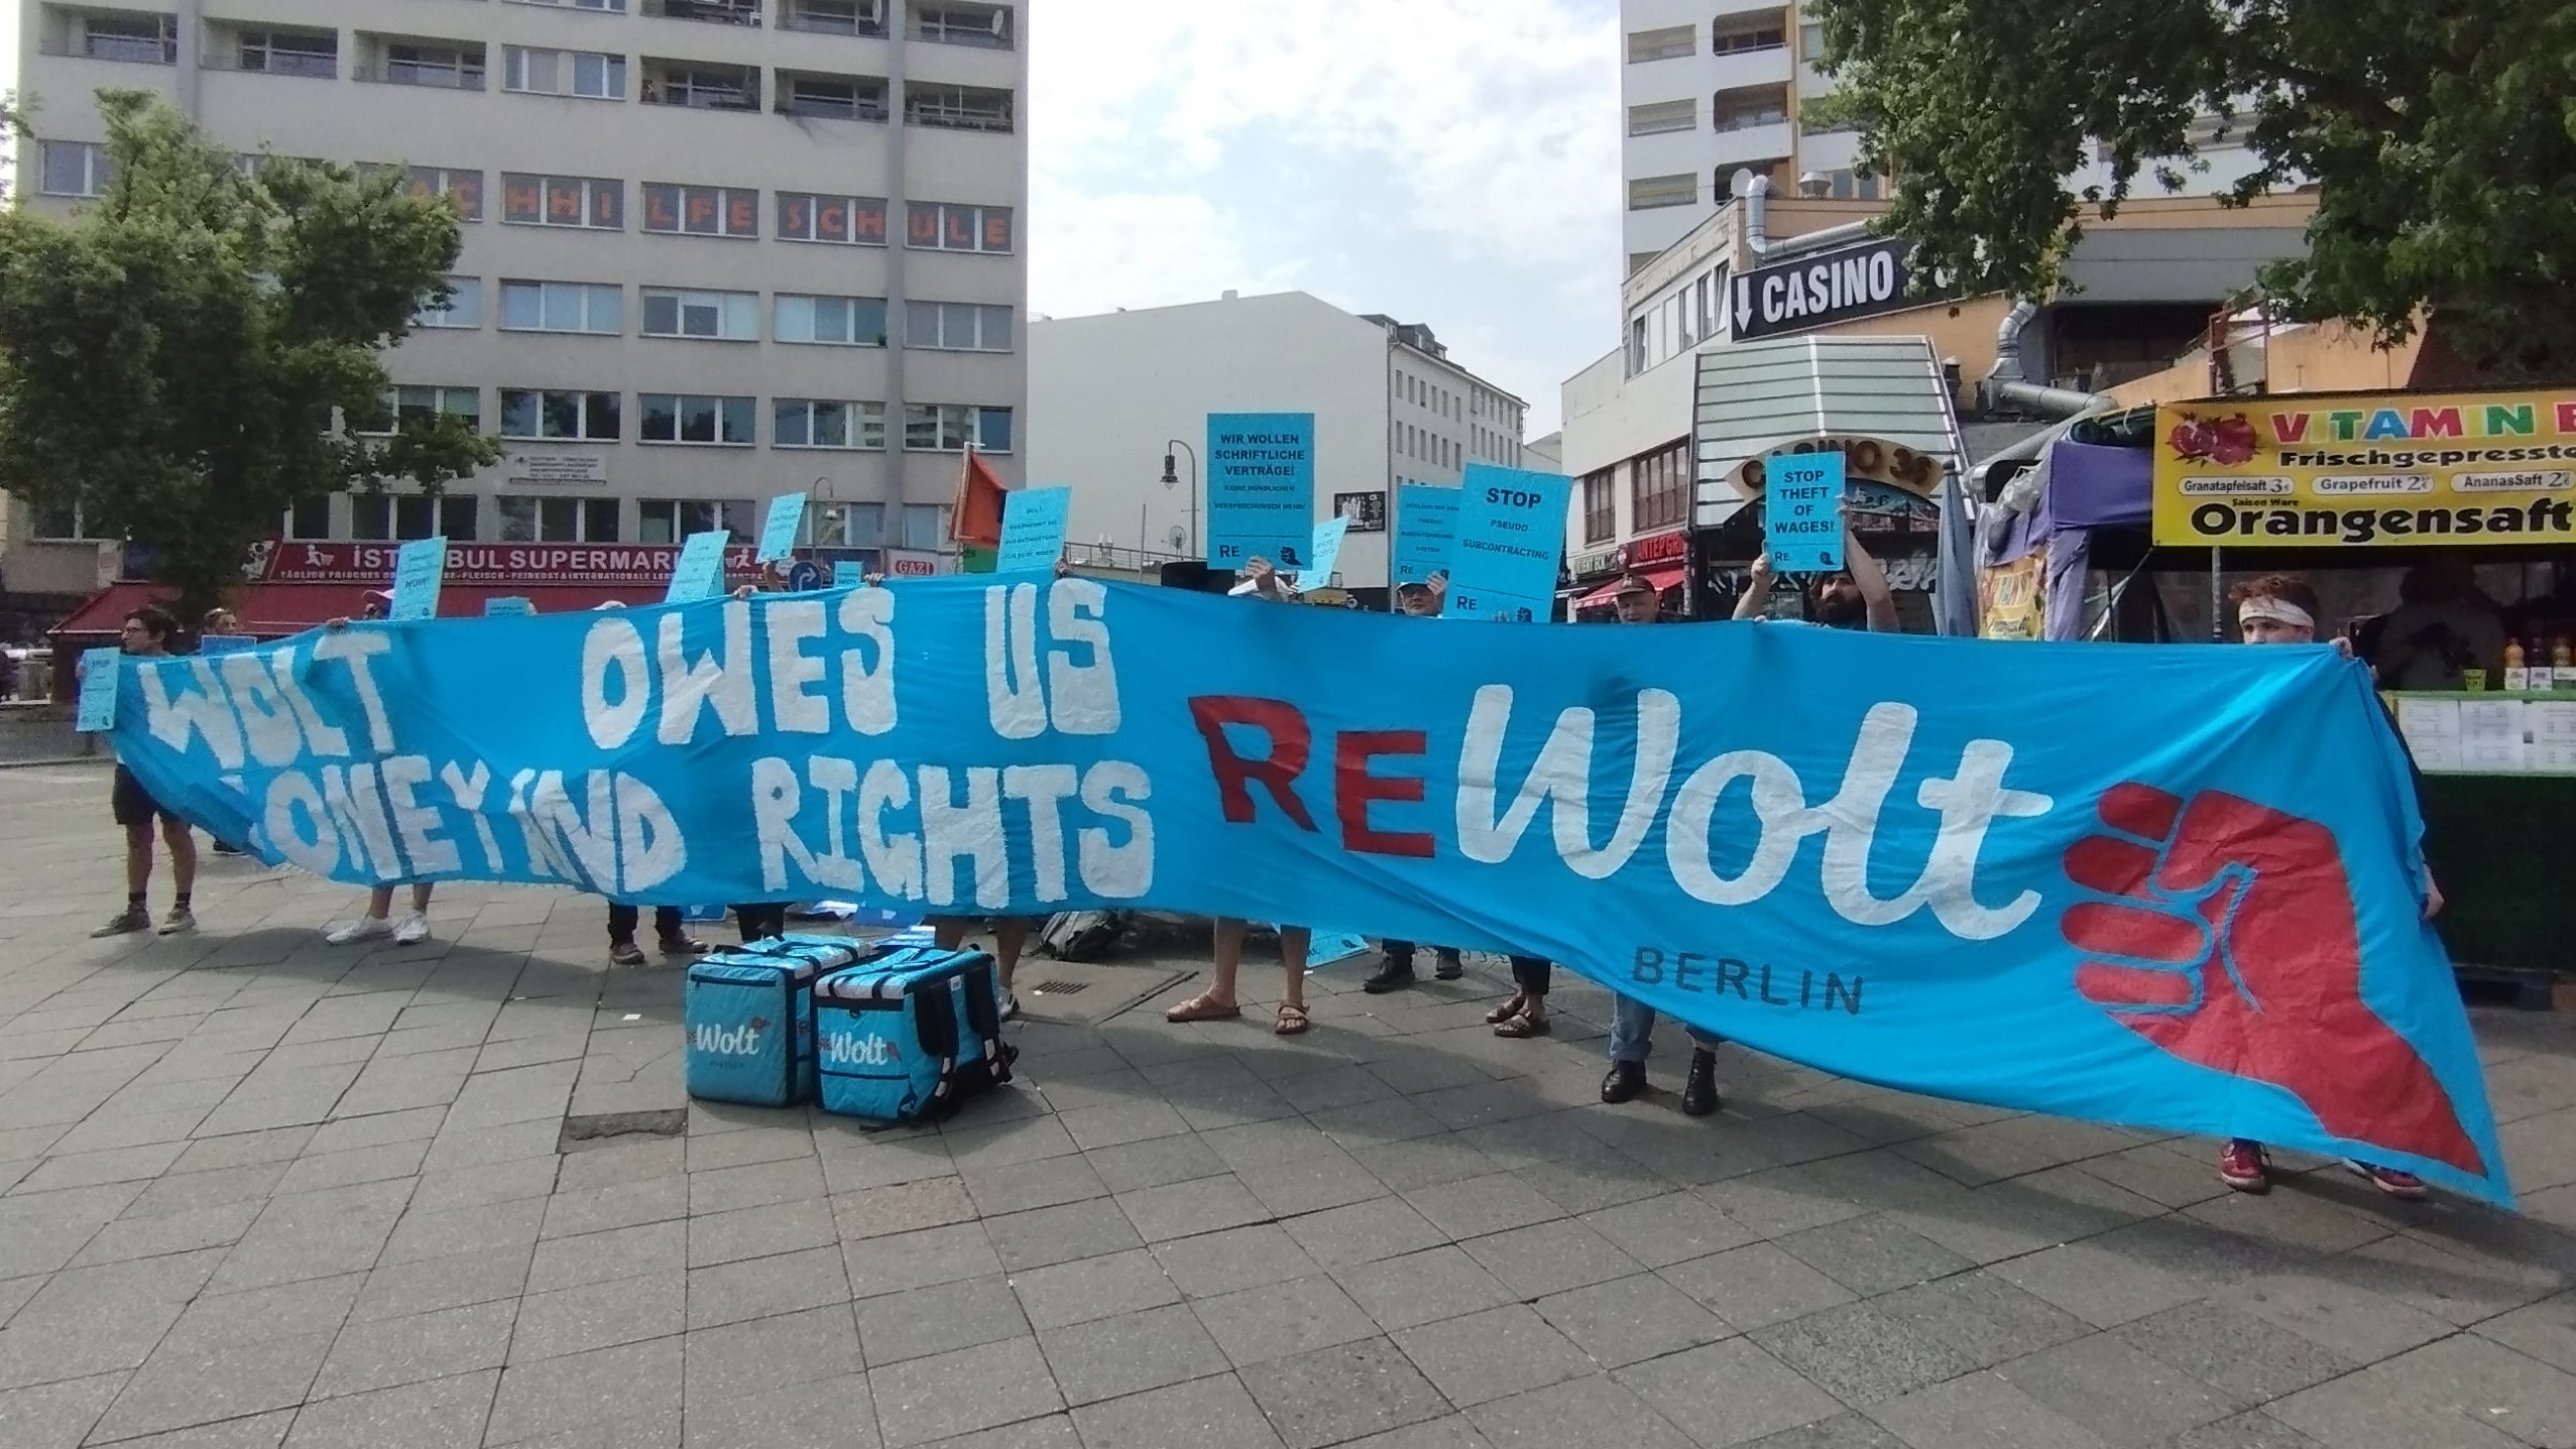 احتجاج عمال توصيل مهاجرين على حرمانهم من أجورهم في برلين – ألمانيا. ReWolt protesters in Berlin (image: Minerwa Tahir)